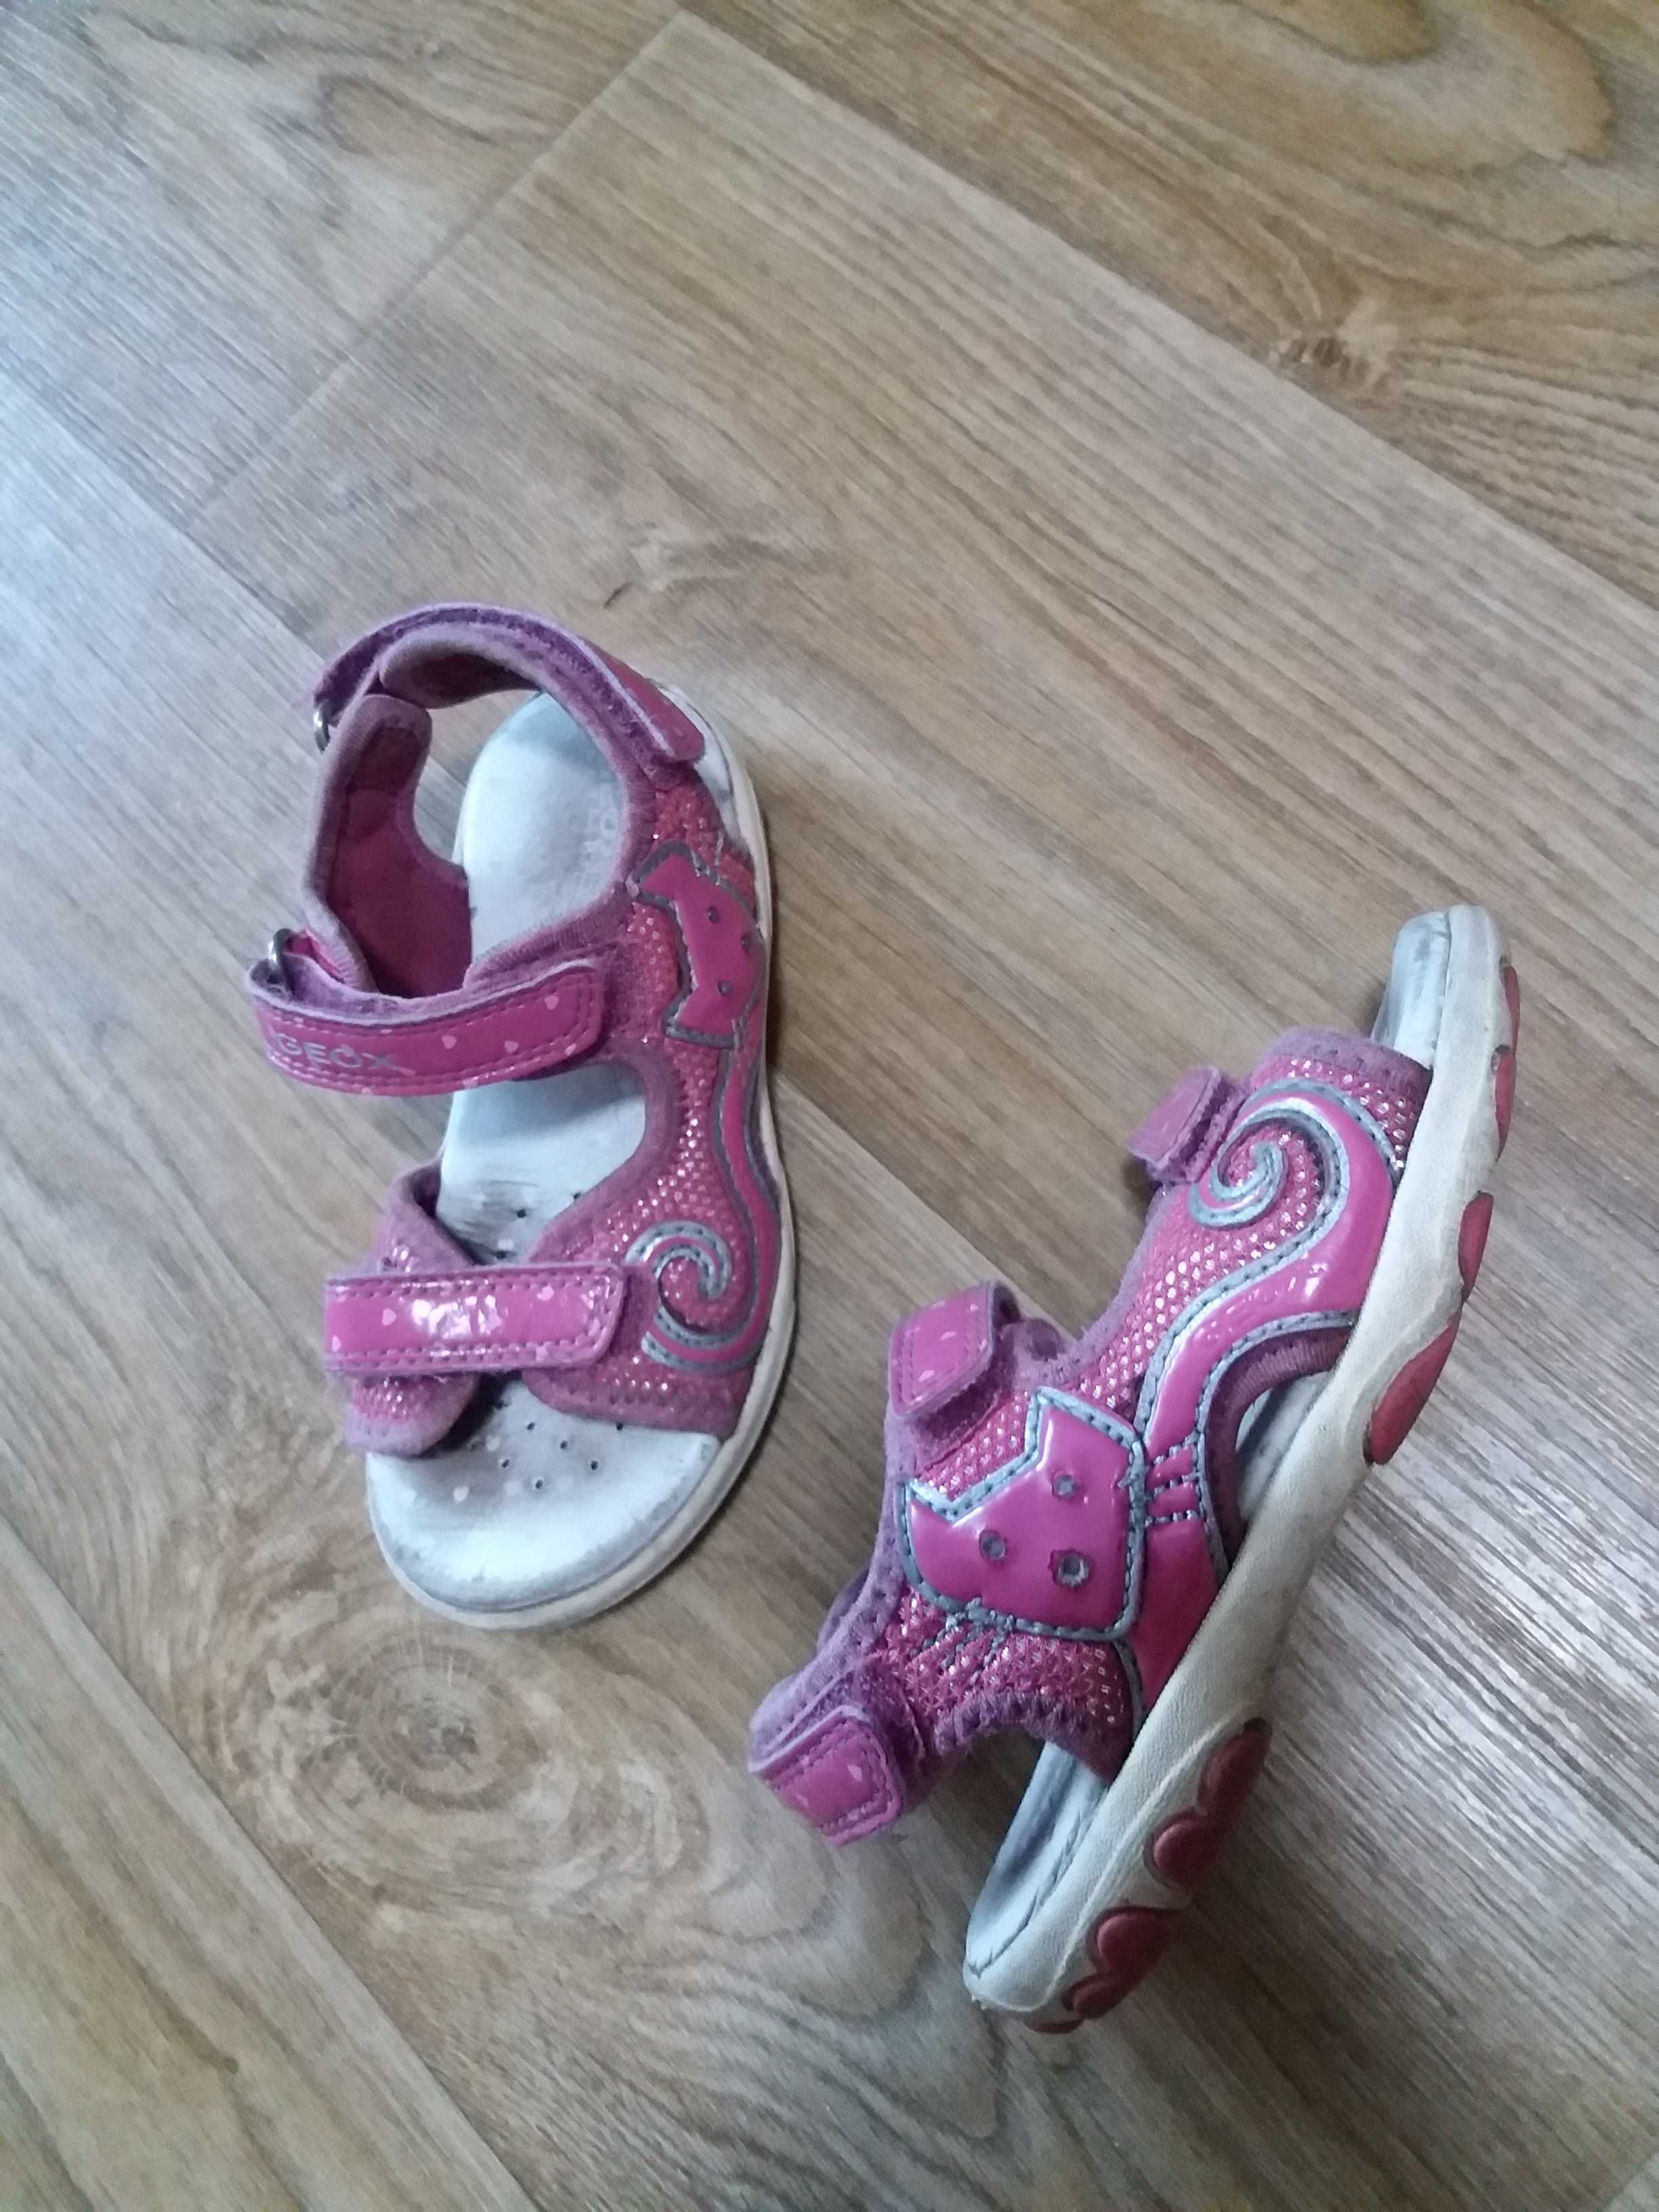 Обувь на девочку 26-27 размер, босоножки crocs, caпоги силик. мальчику